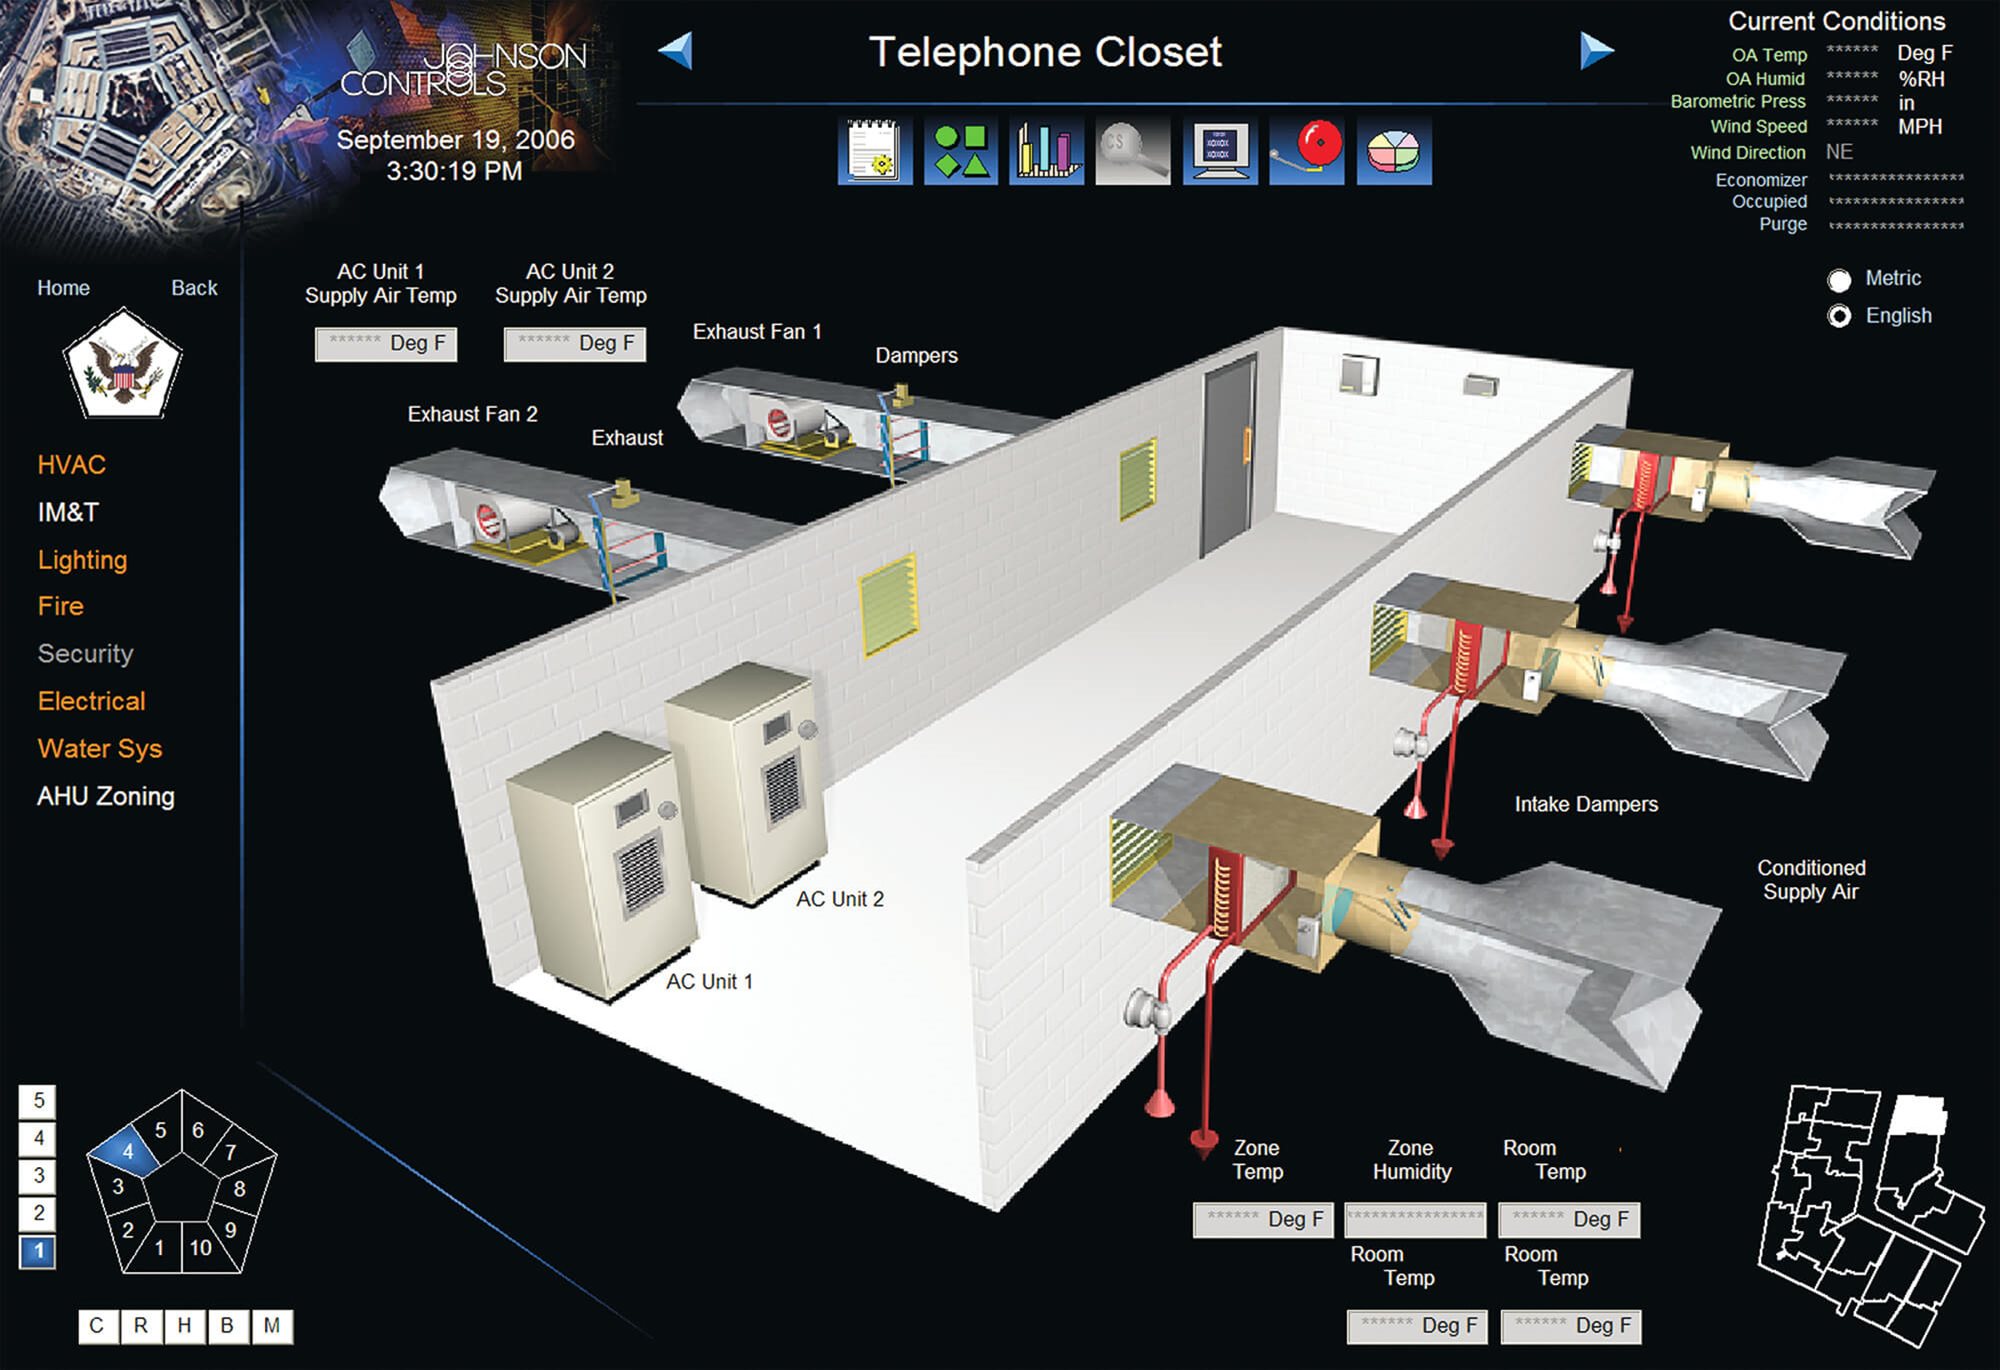 A Building Operations Control Screen